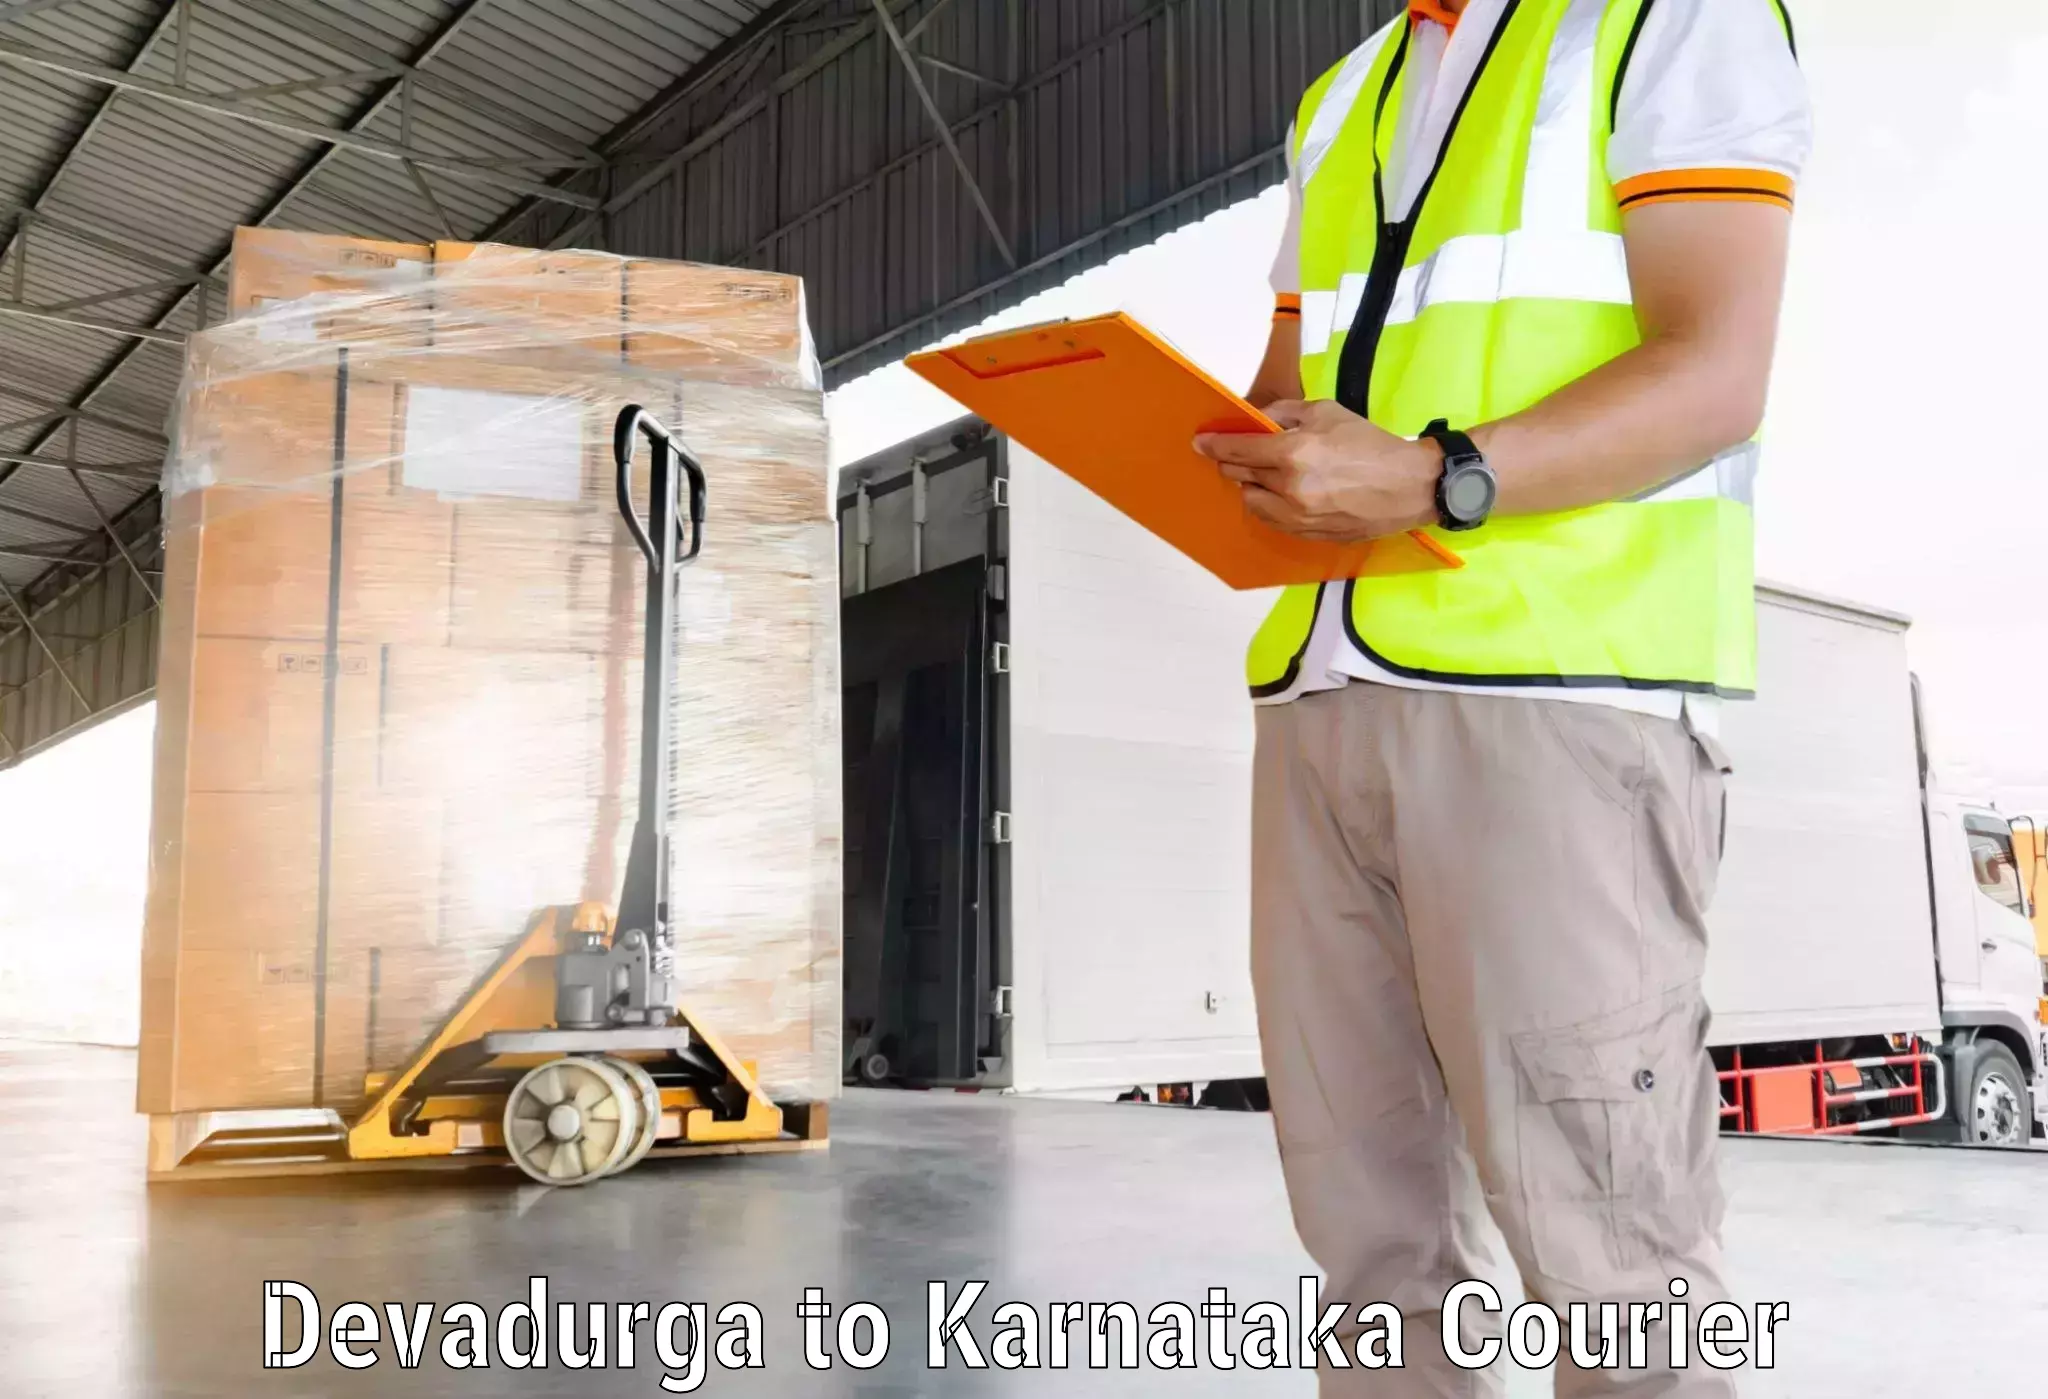 Easy access courier services Devadurga to Karwar